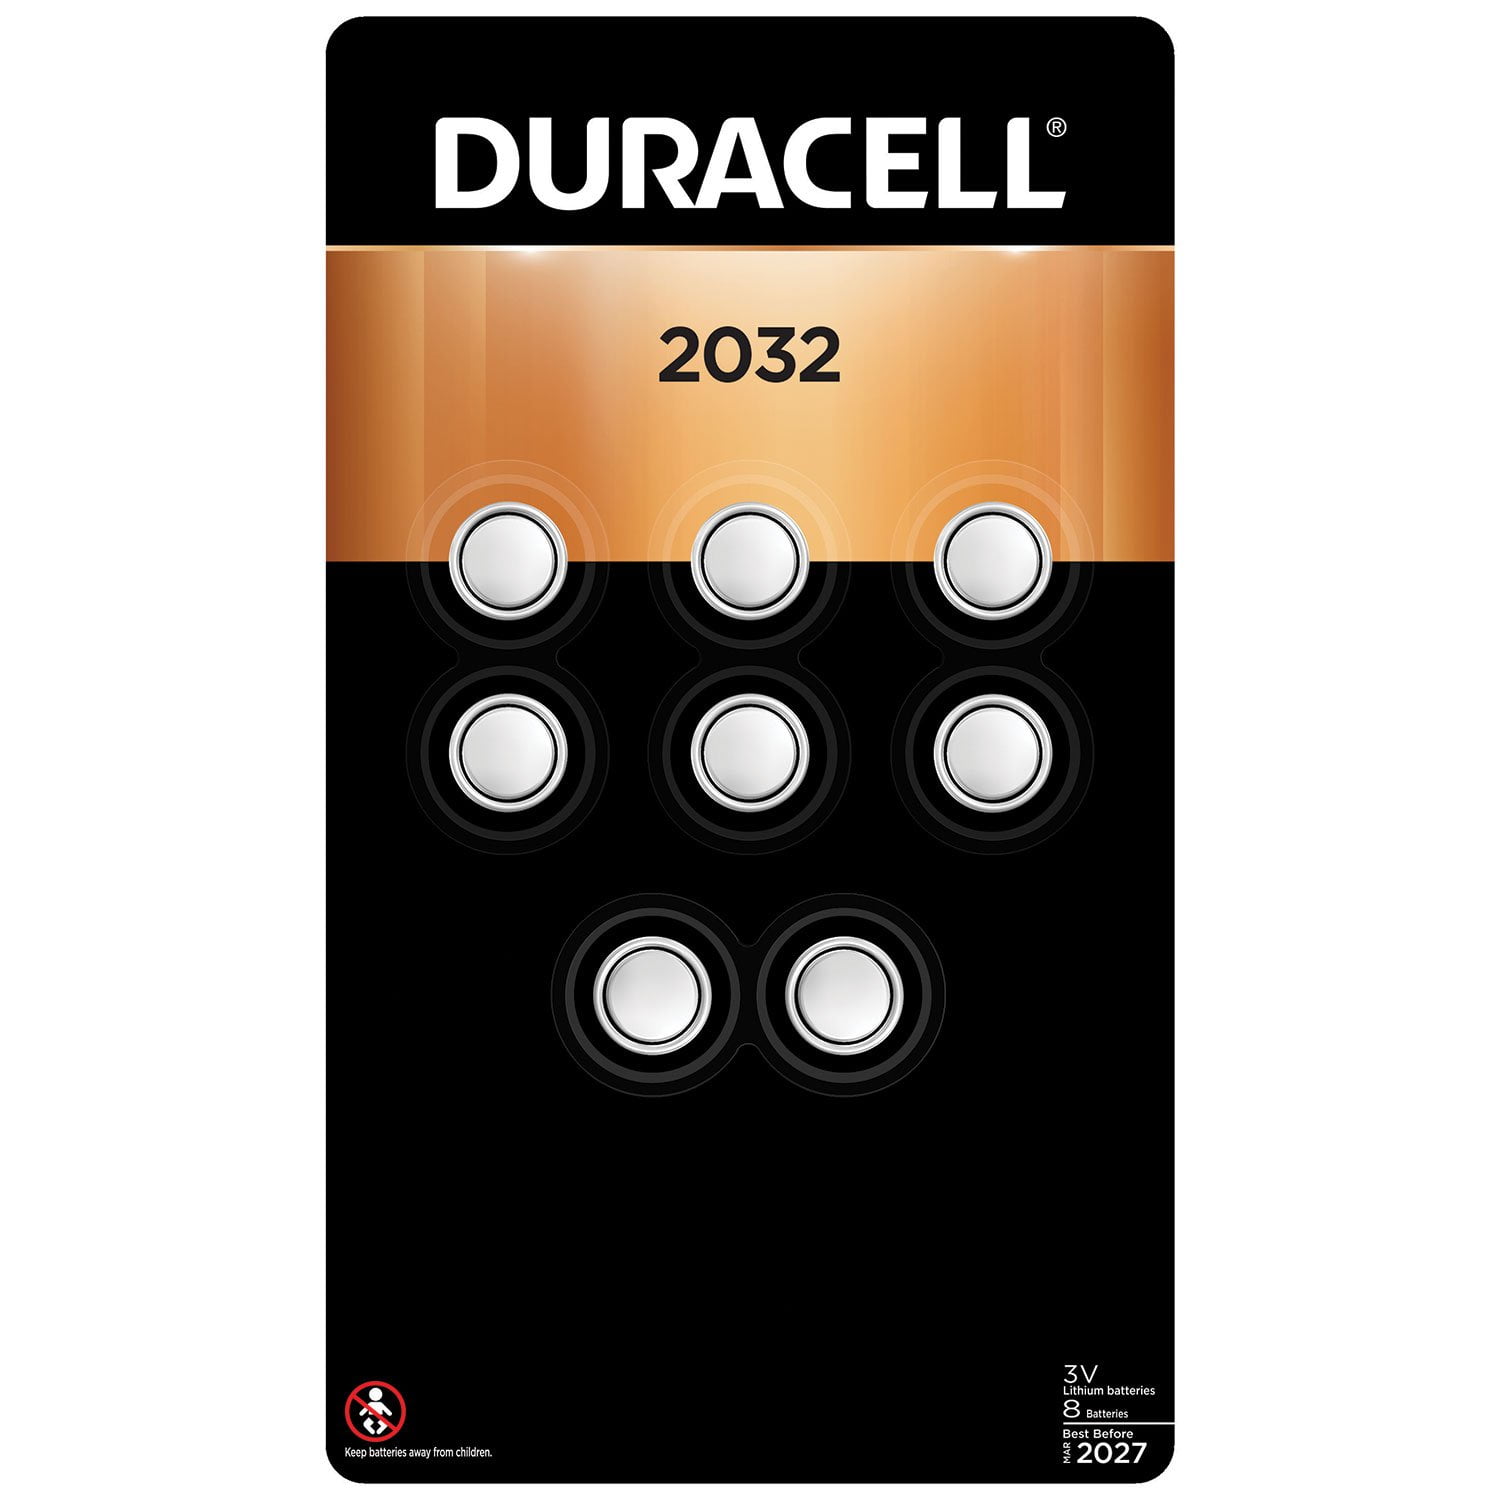 Duracell 2032 - Piles Spéciales Bouton Lithium (x 8) - Magasin de